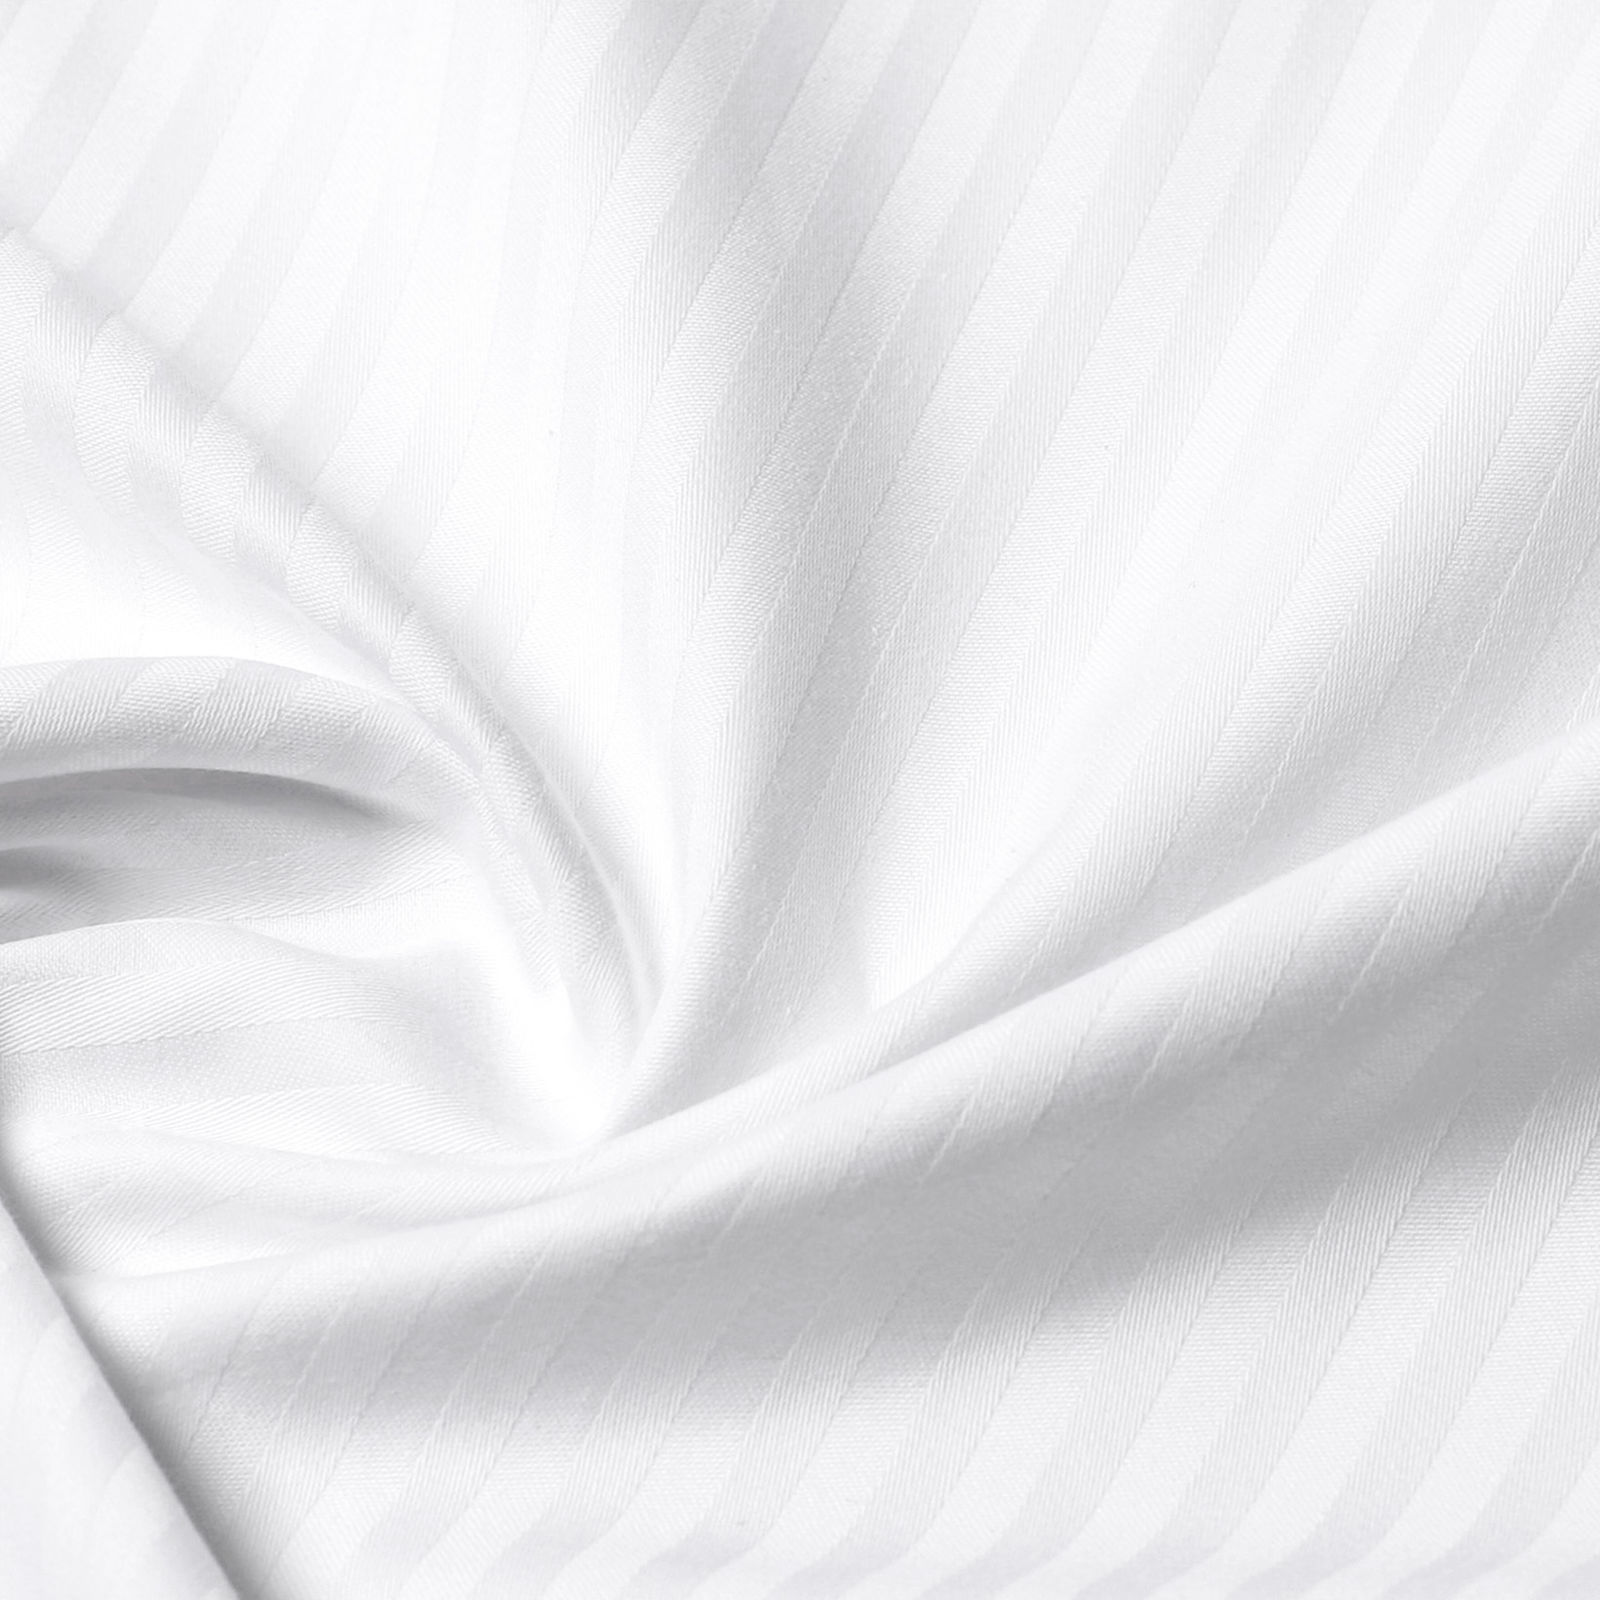 Damaškové posteľné obliečky - tenké biele prúžky so saténovým leskom